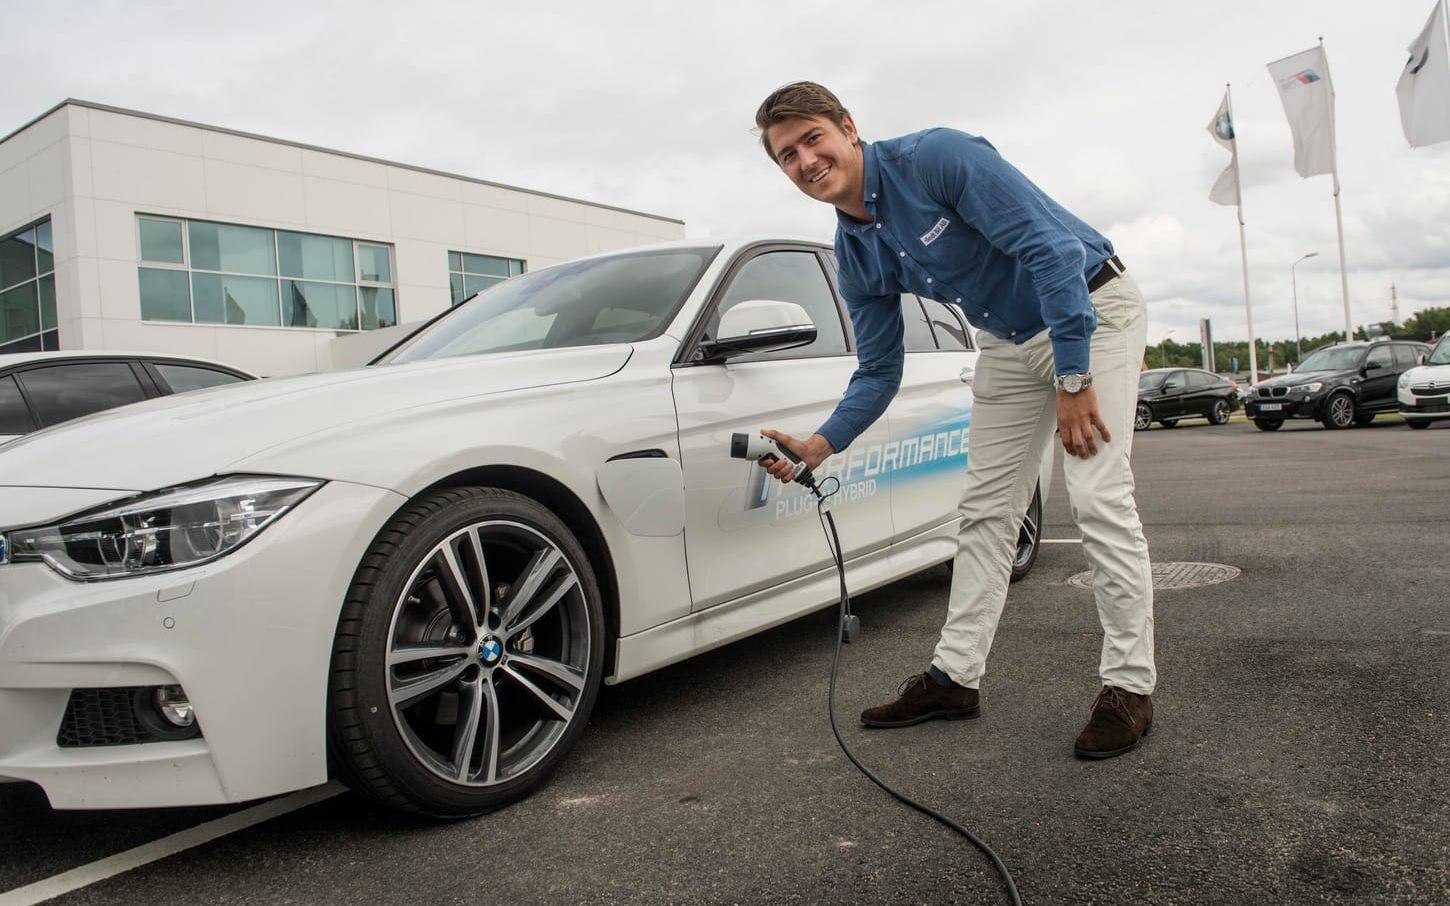 Marcus Johansson, marknadschef på Bendt bil i Halmstad, berättar att intresset för hybridbilar blivit mycket större. Bild: Jari Välitalo